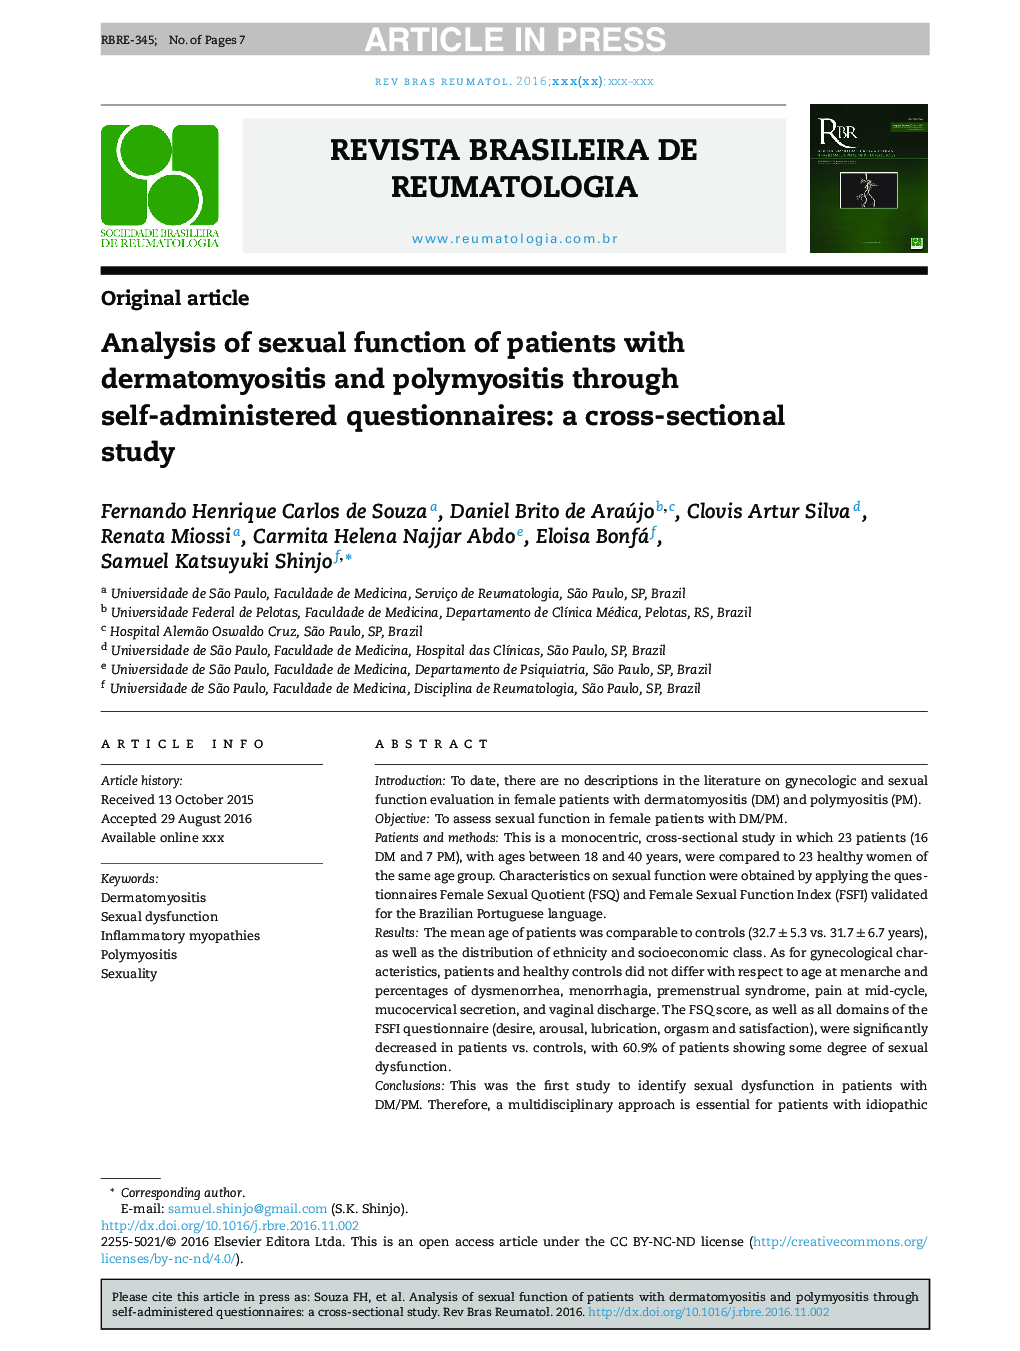 تحلیل عملکرد جنسی بیماران مبتلا به درماتومیوزیت و پلیمیوزیت با استفاده از پرسشنامه های خودمراقبتی: یک مطالعه مقطعی 